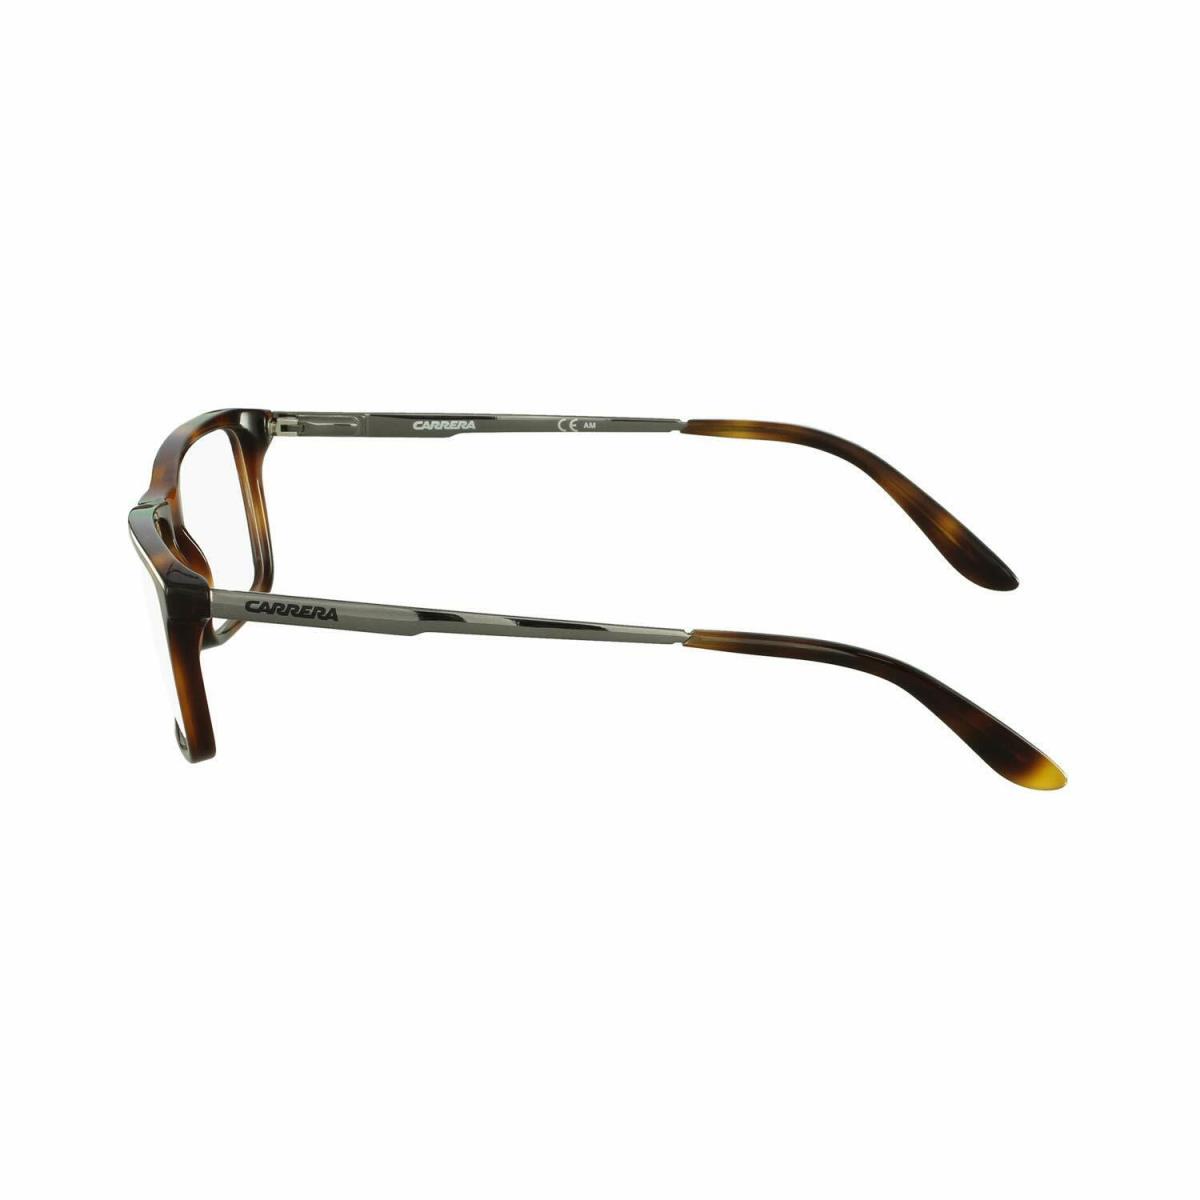 Carrera eyeglasses FTT - Dark Havana Black , Havana Frame 0